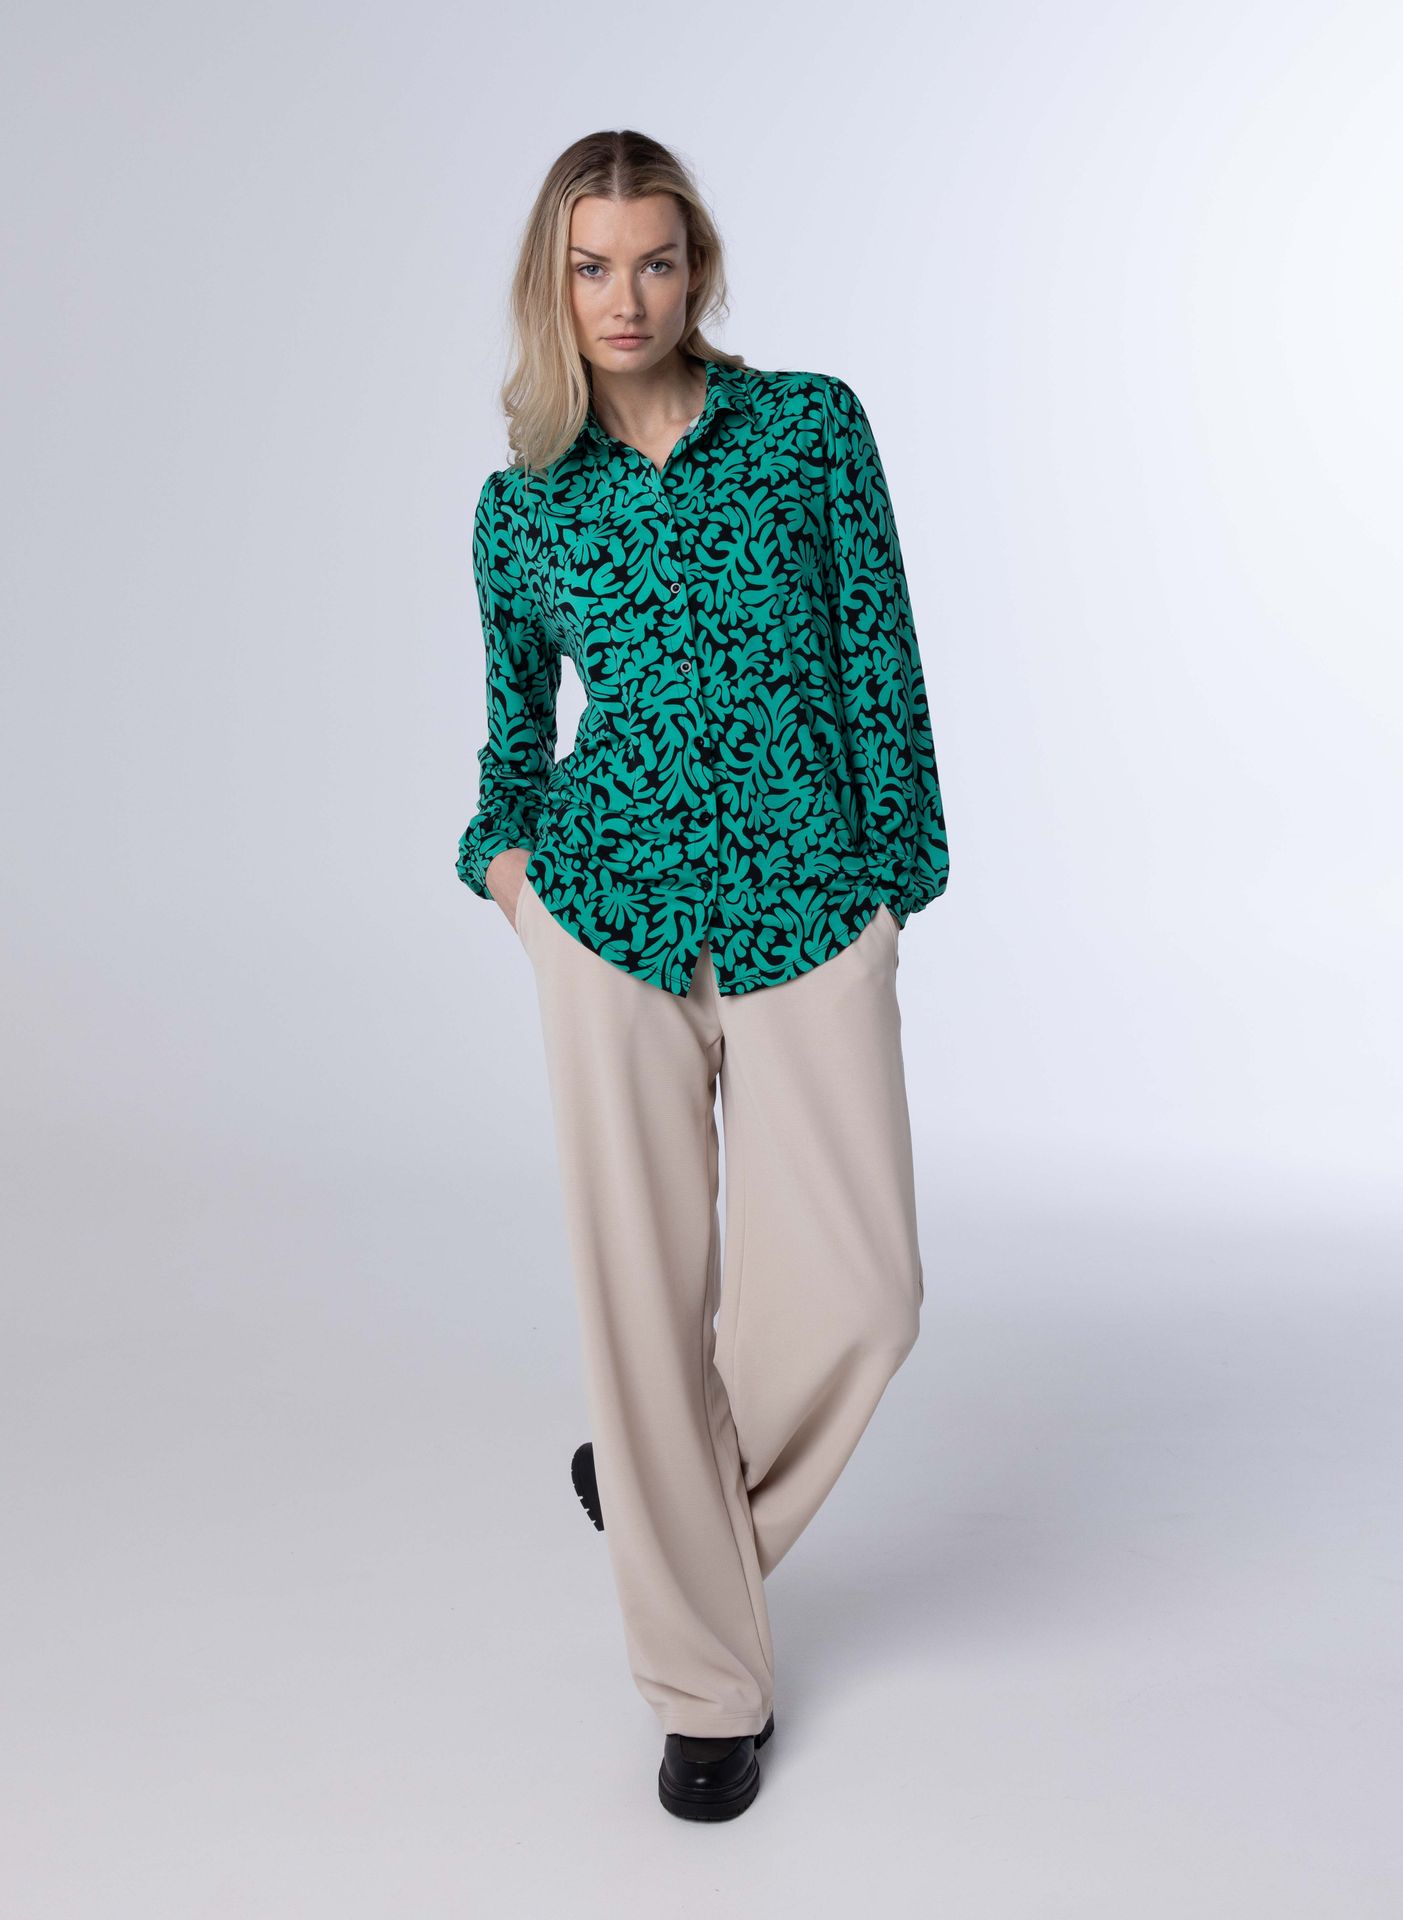 Norah Groene blouse met print green/black 214073-530